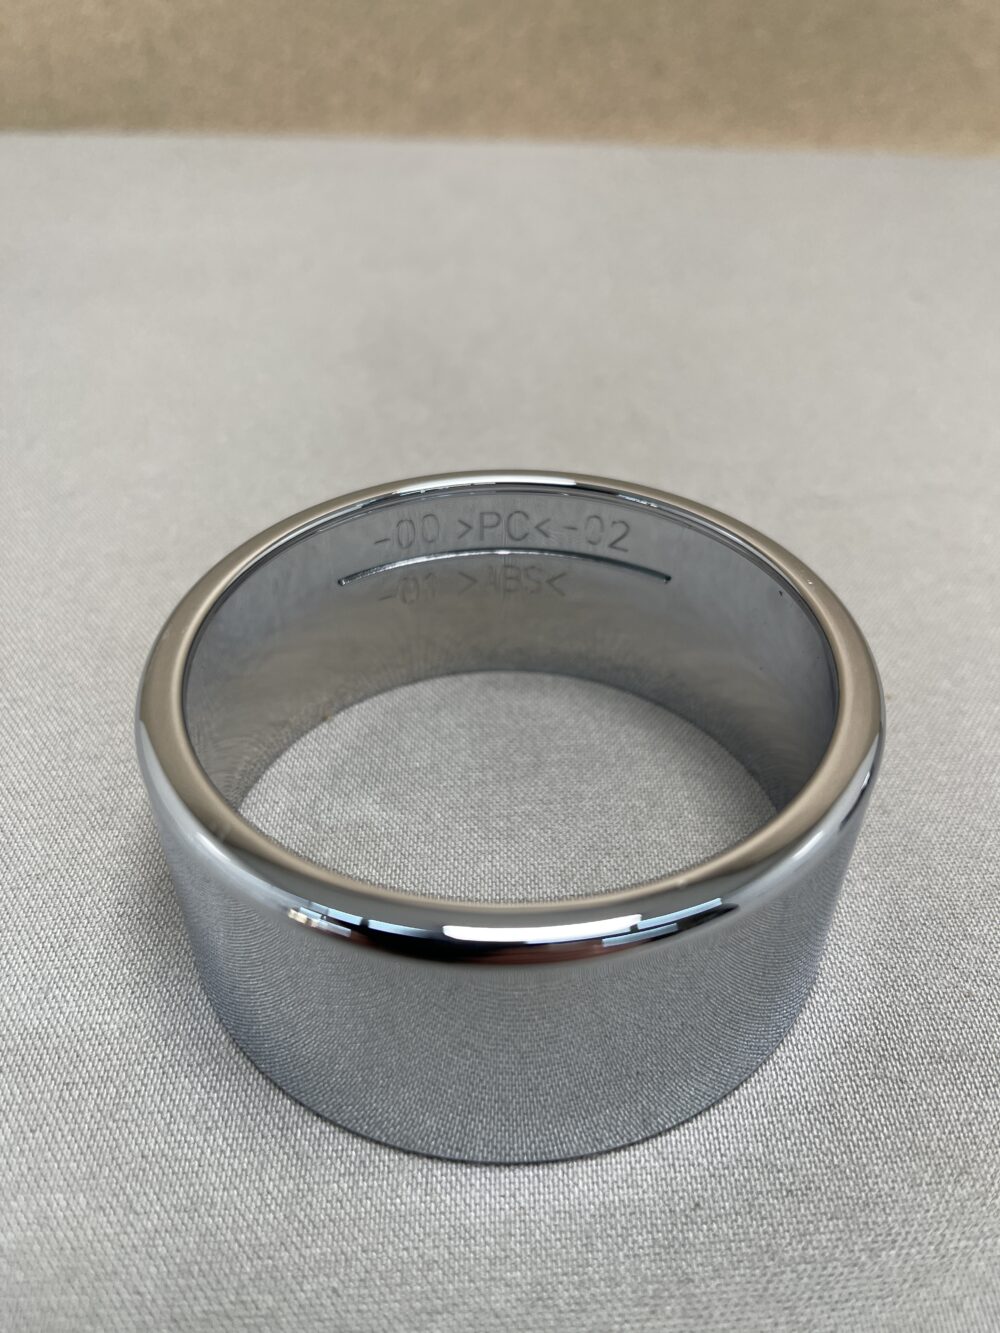 Schneider Abdeckung Ring Chrome Häfele 7cm 2-er Set